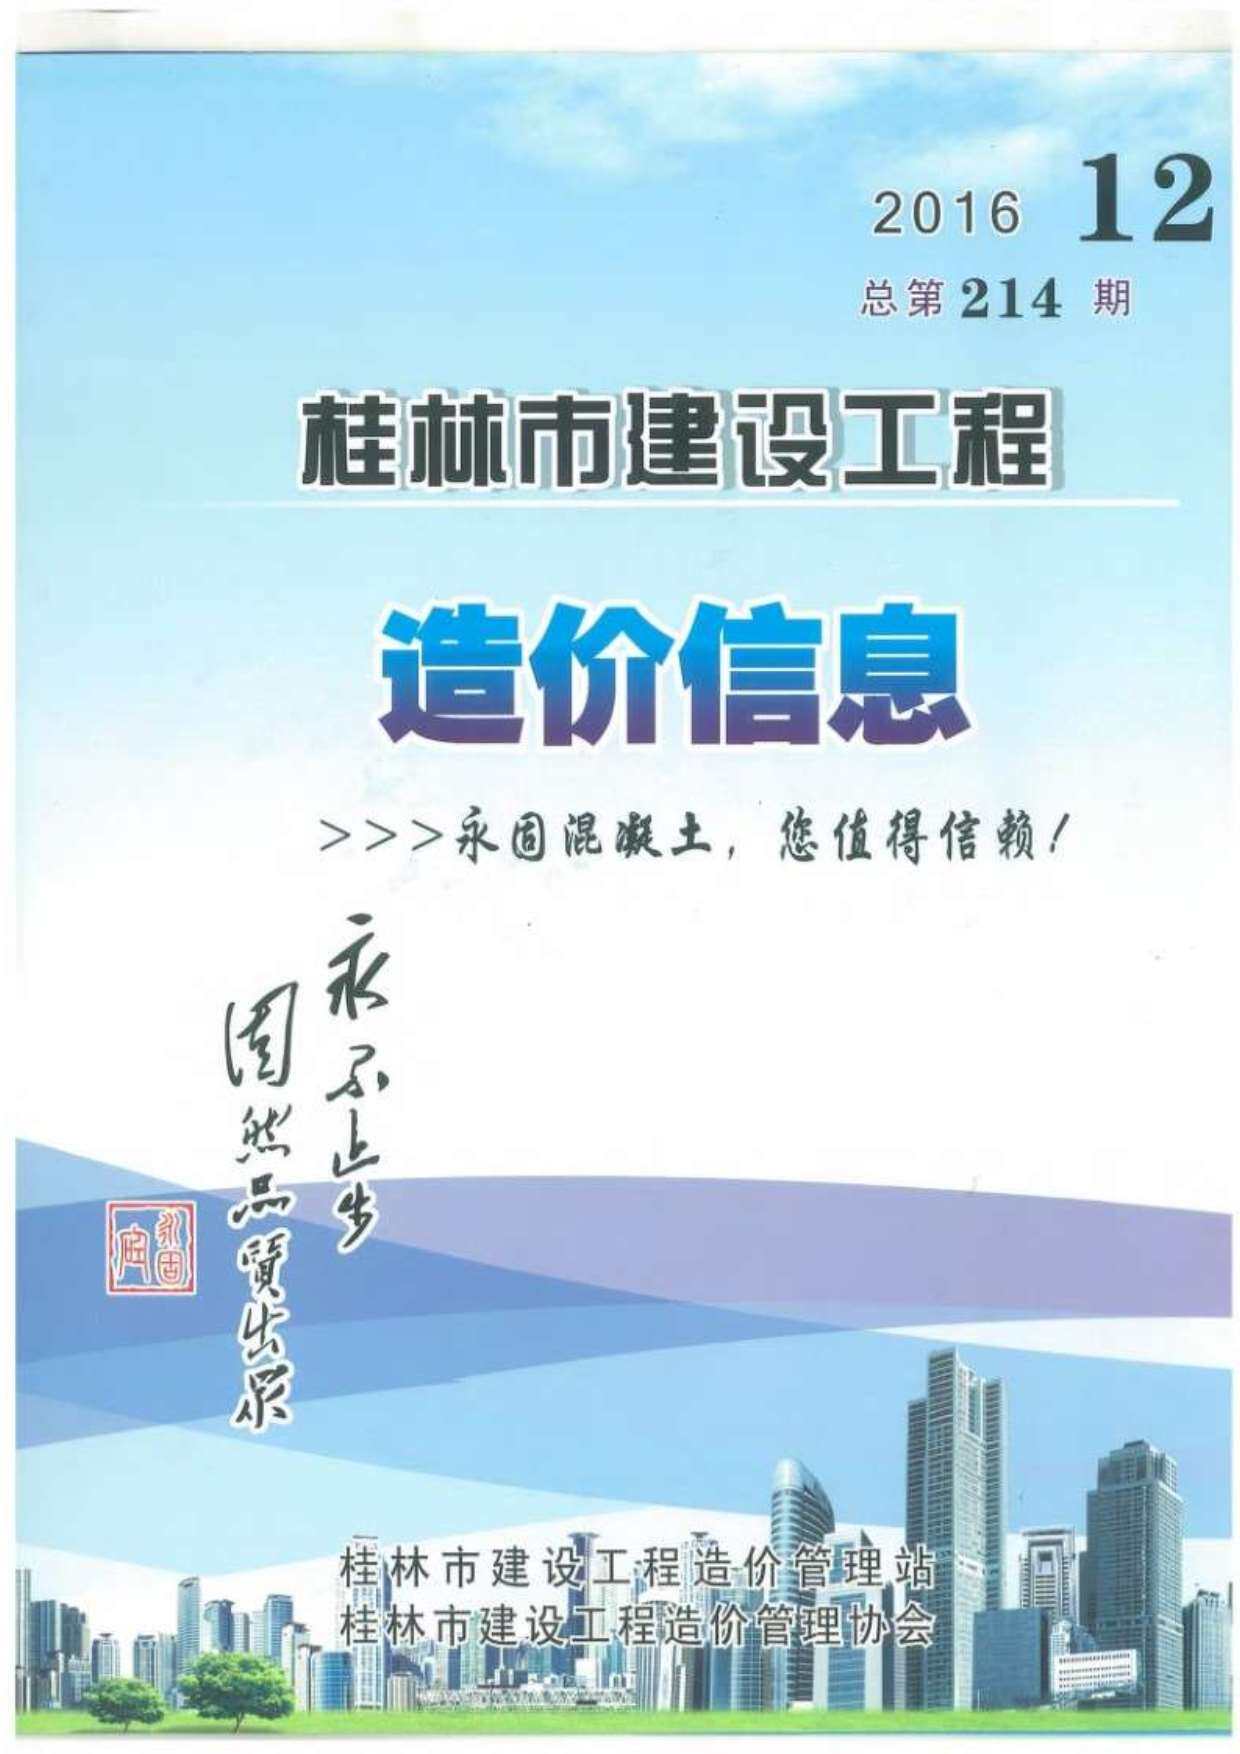 桂林市2016年12月工程造价信息期刊